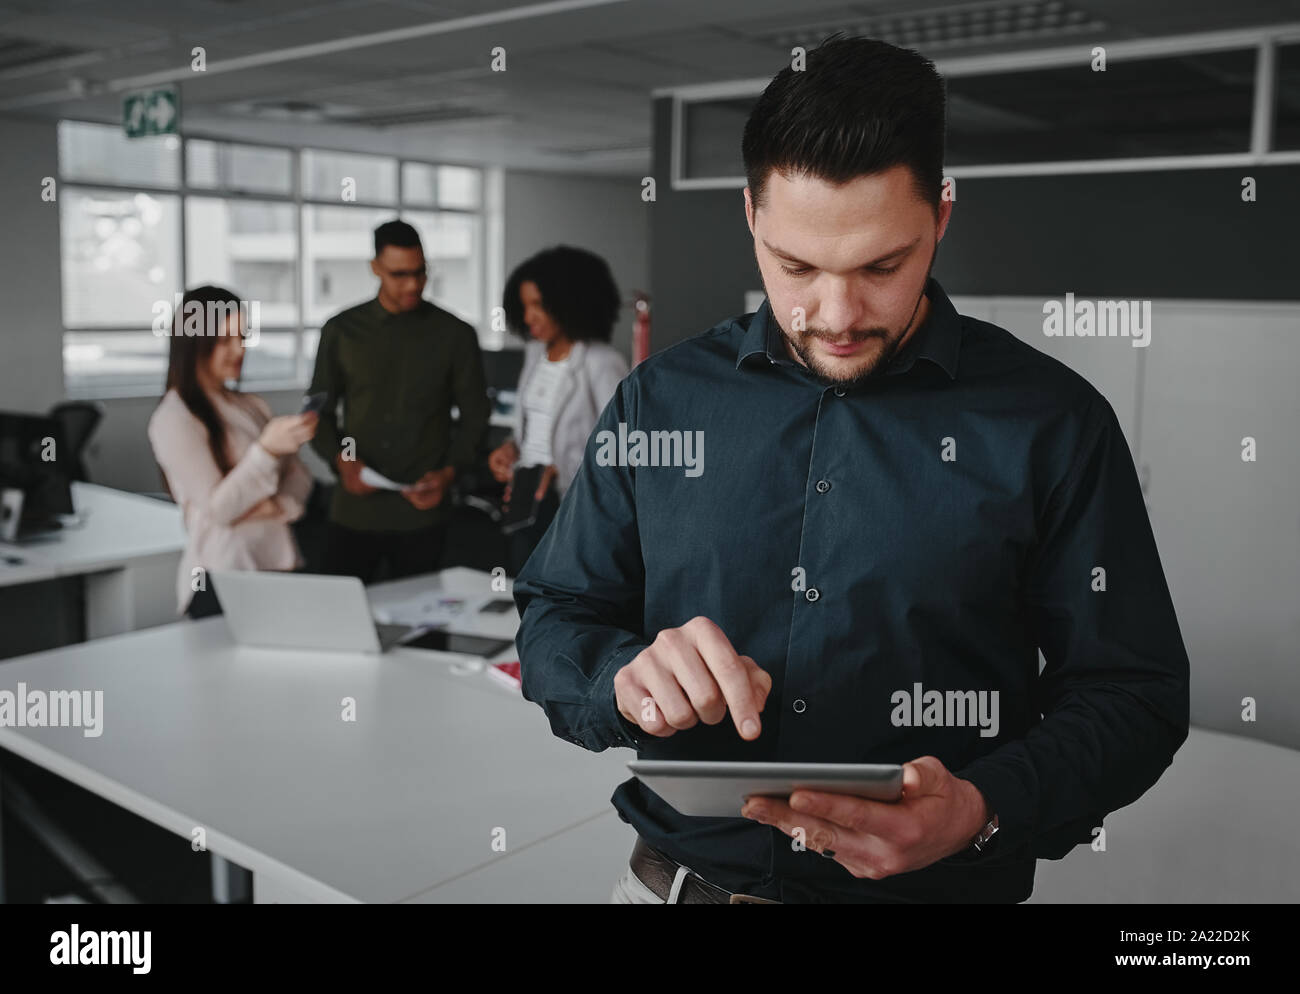 Young businessman using digital tablet tandis que ses collègues ayant discussion sur le projet dans l'arrière-plan Banque D'Images